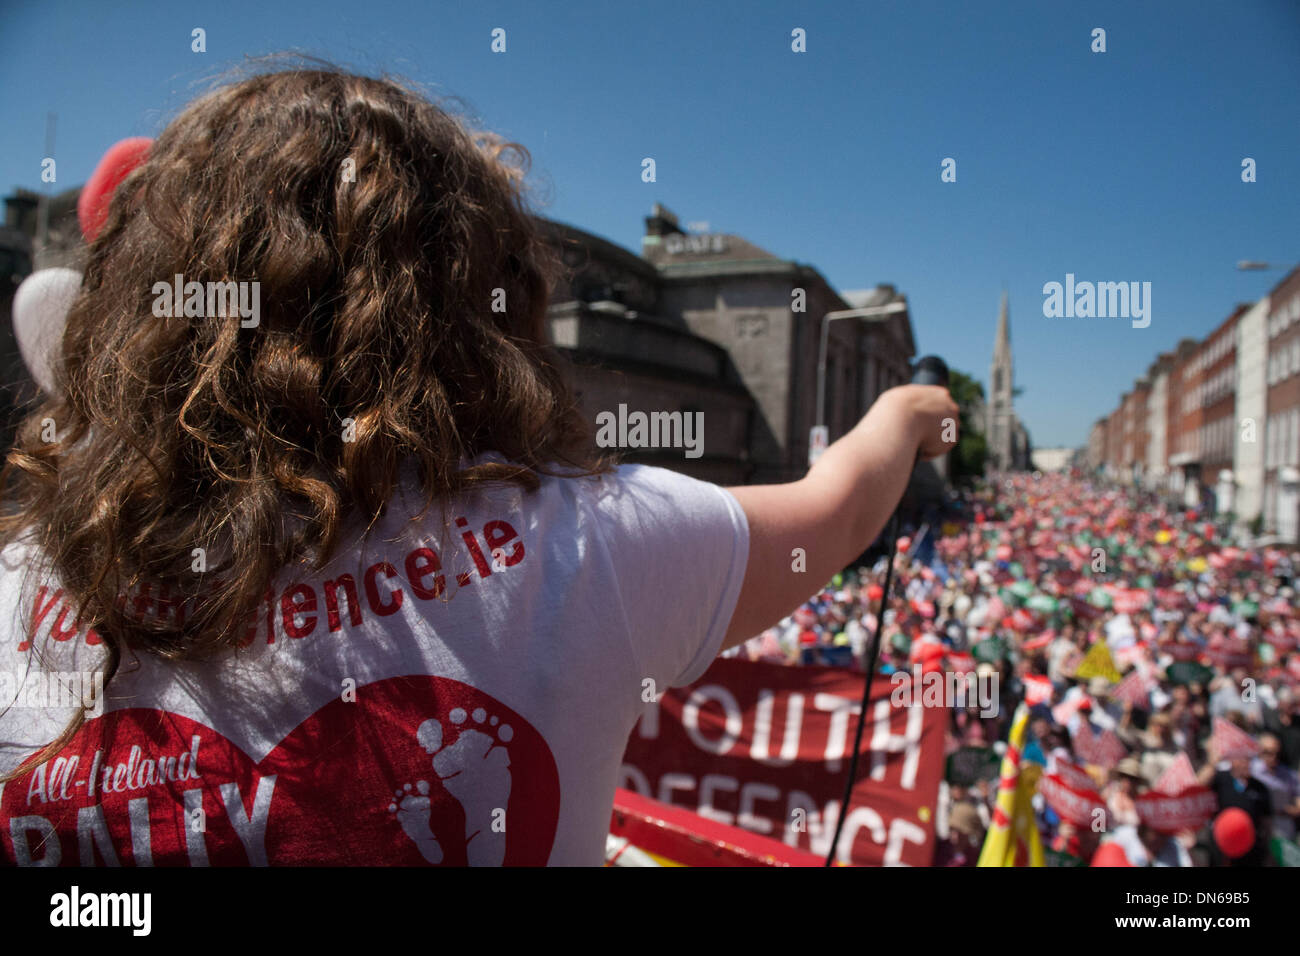 Einer der Organisatoren der alle Irland Rallye fürs Leben ruft die 60.000 Zuschauern es Protest gegen Abtreibung Stockfoto